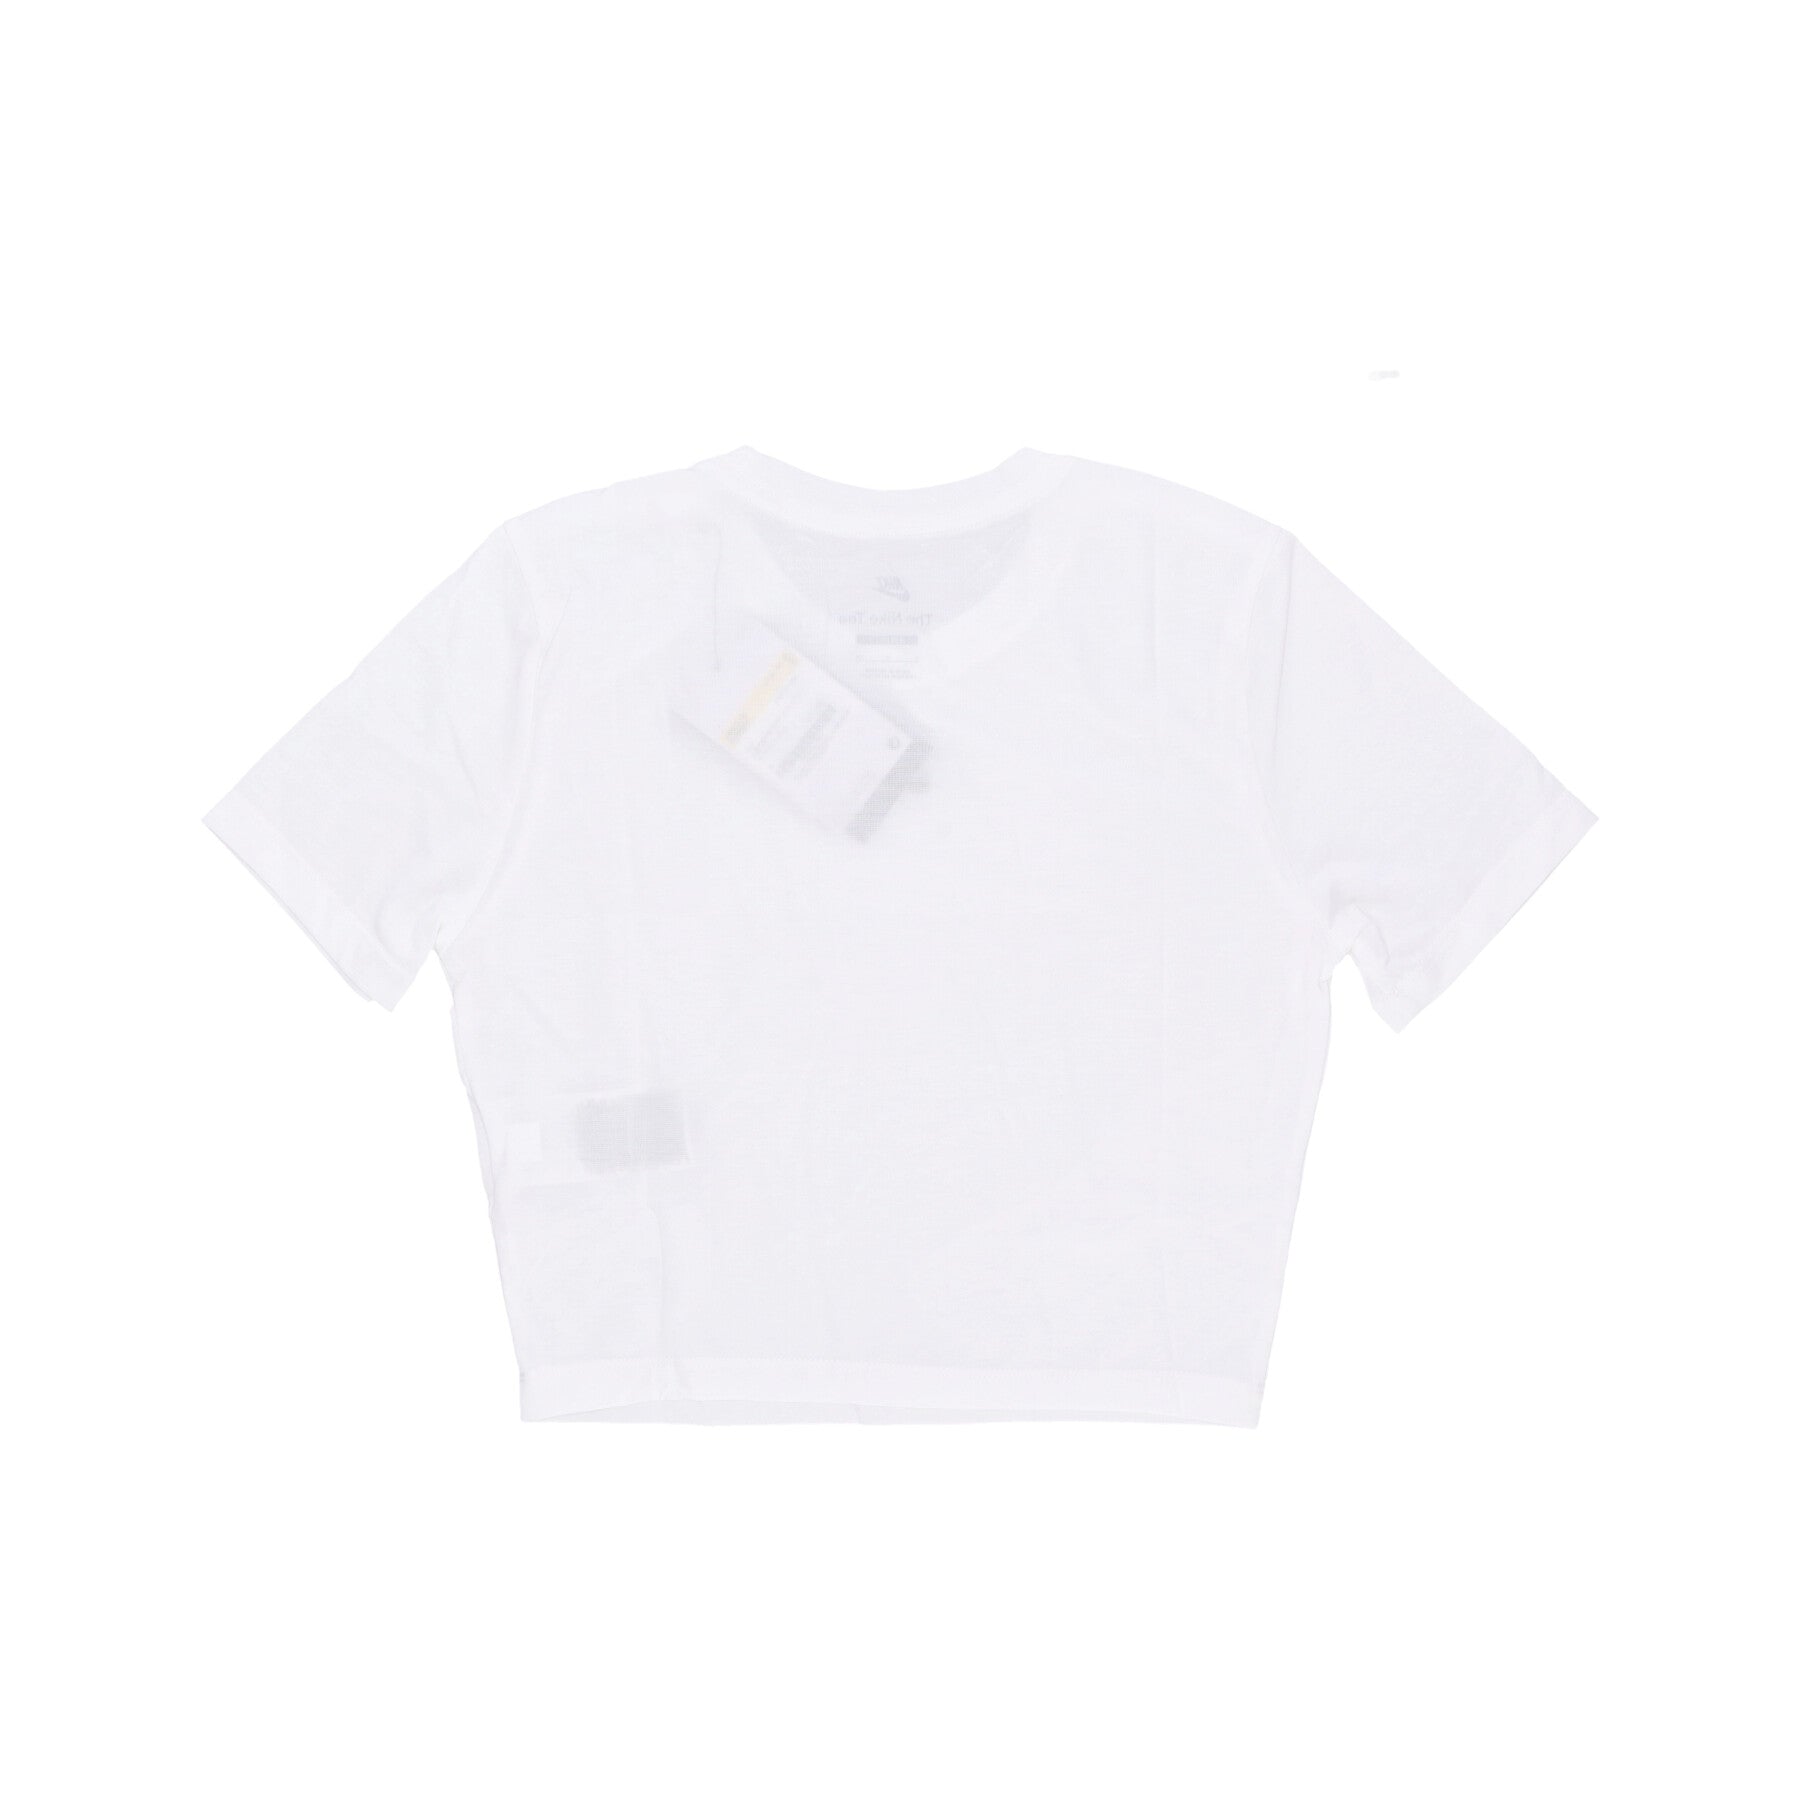 W Sportswear Essential Slim-fit Crop Tee Women's Short T-Shirt White/white/black